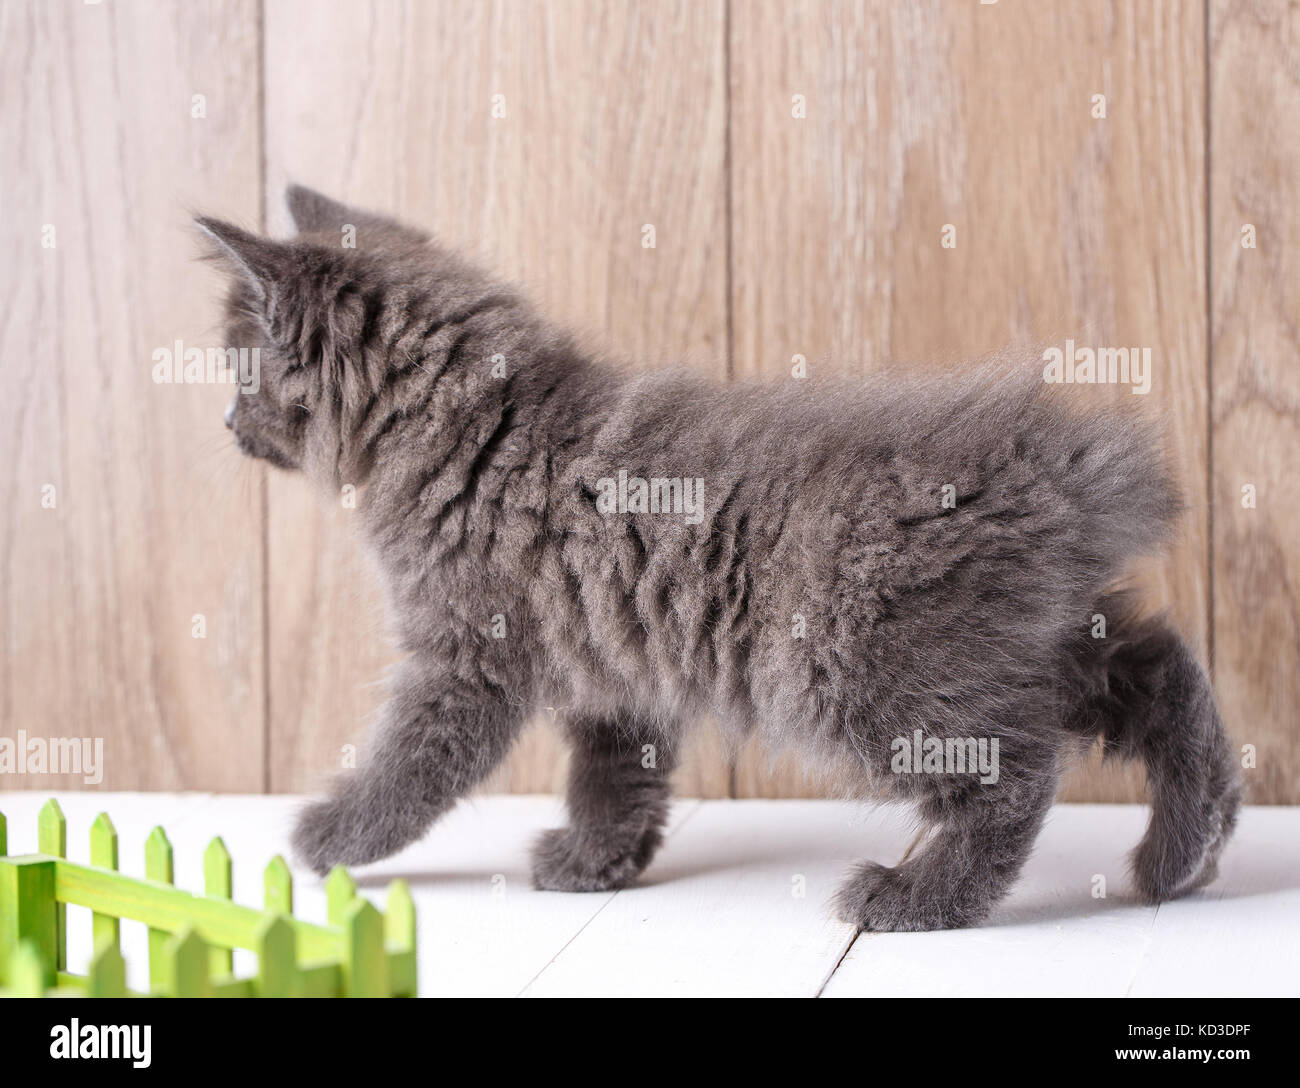 Kitten Breed Kurilian Bobtail On Wooden Background Stock Photo Alamy